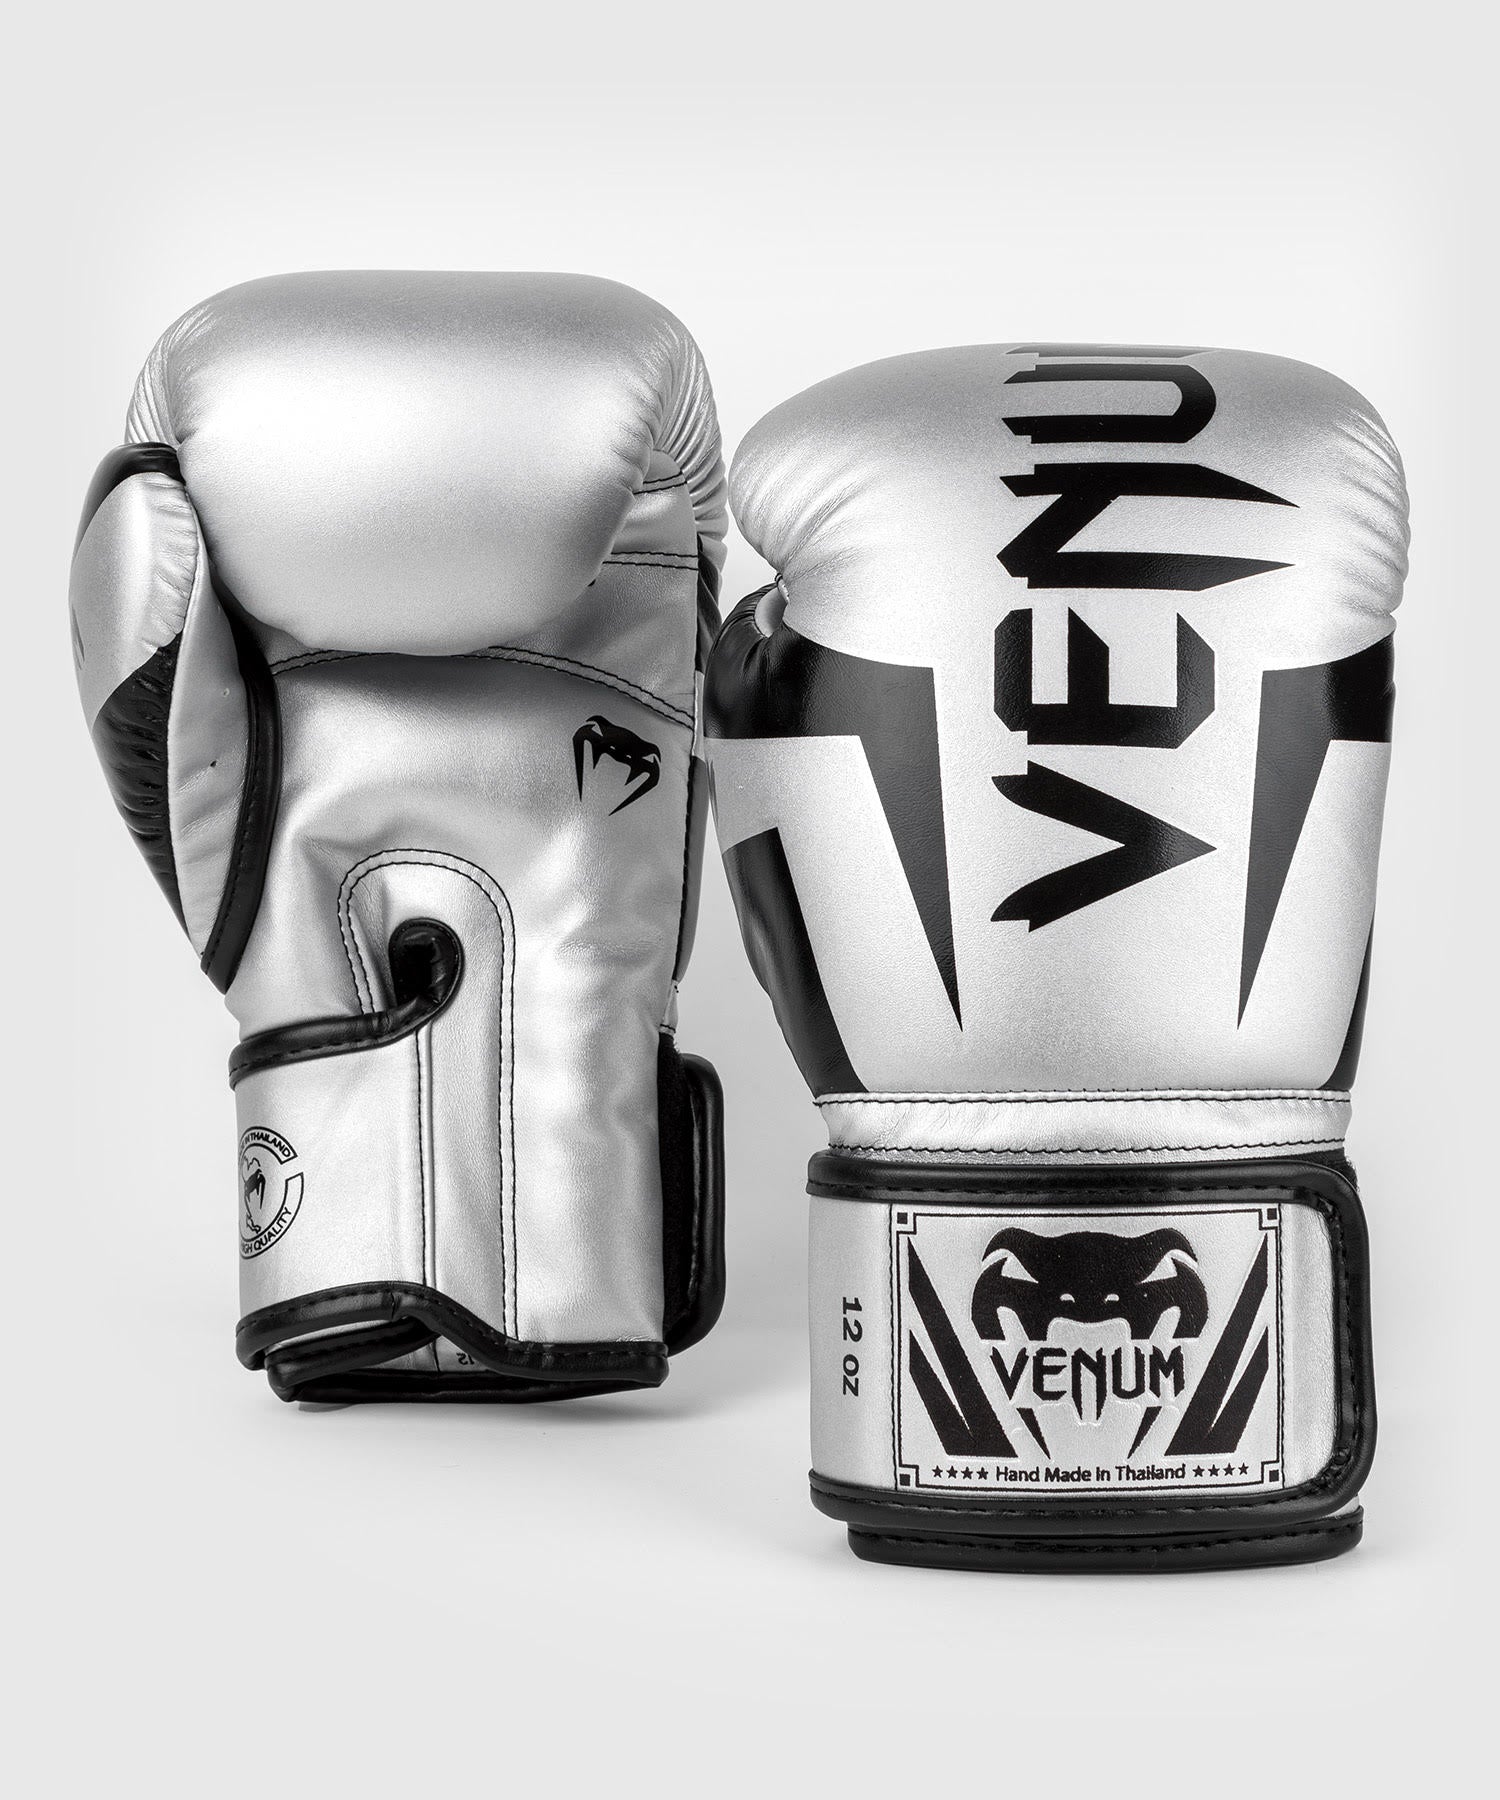 Gants de boxe Venum Elite noir / or > Livraison Gratuite